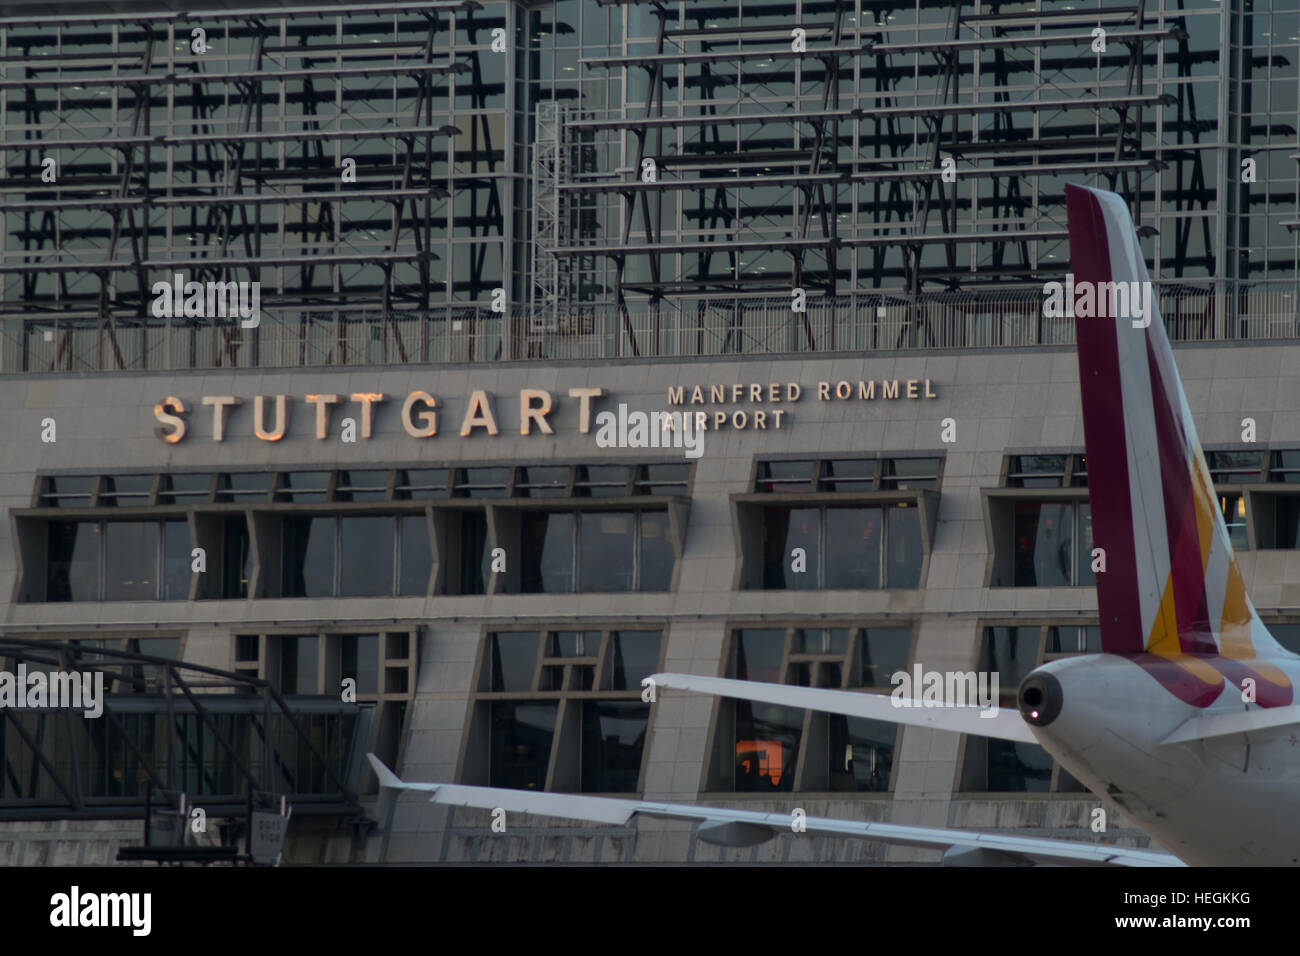 Airbus A319 de Germanwings estacionado en el aeropuerto de Stuttgart. Manfred Rommel aeropuerto Foto de stock